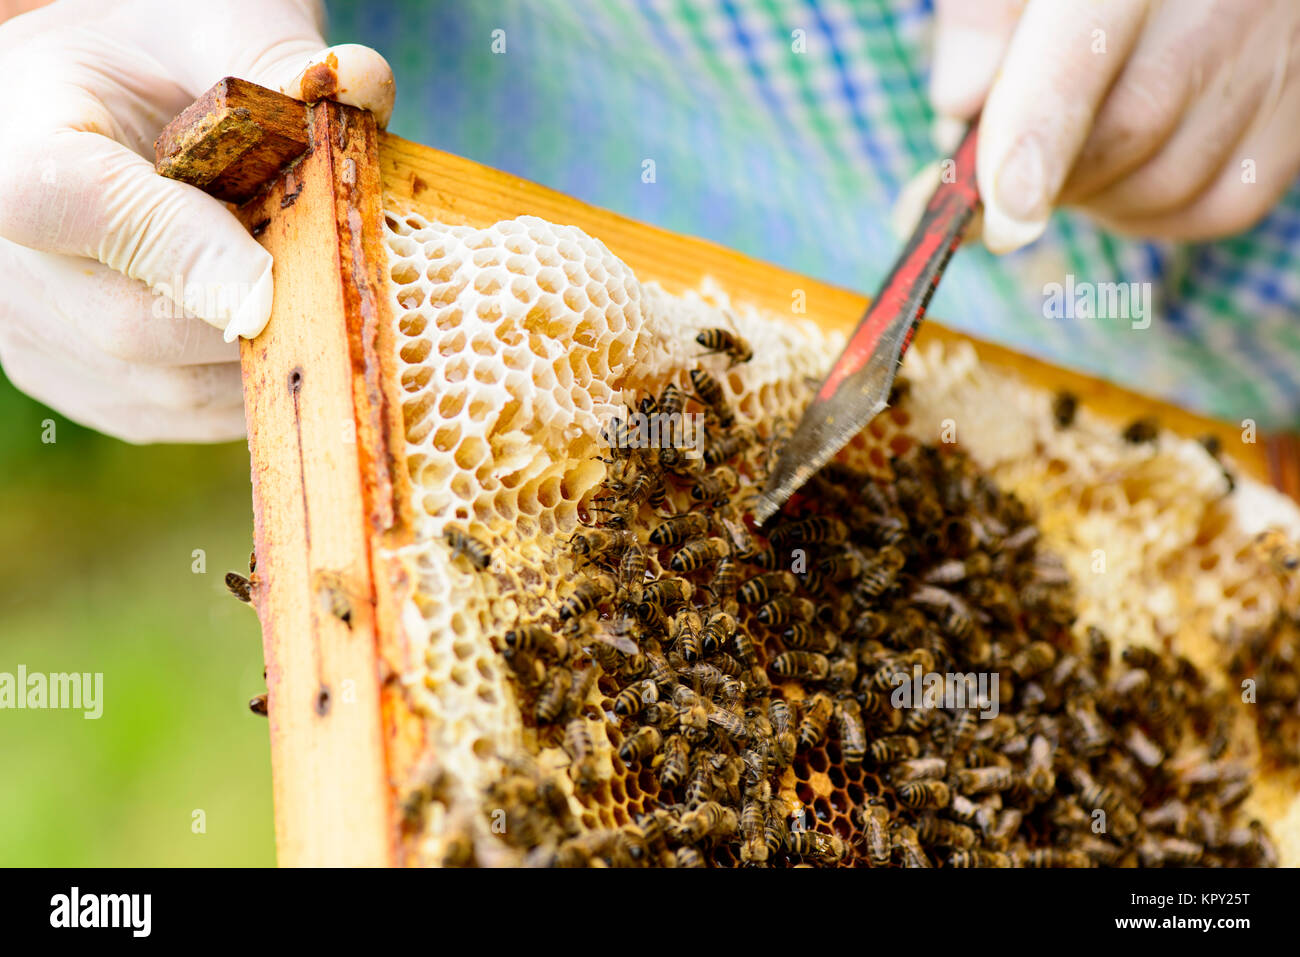 TianranRT Bienenwabe Biene Wachs Grundierung Bienenstock Wachs Rahmen Basis Betttücher Biene Kamm Honig Rahmen